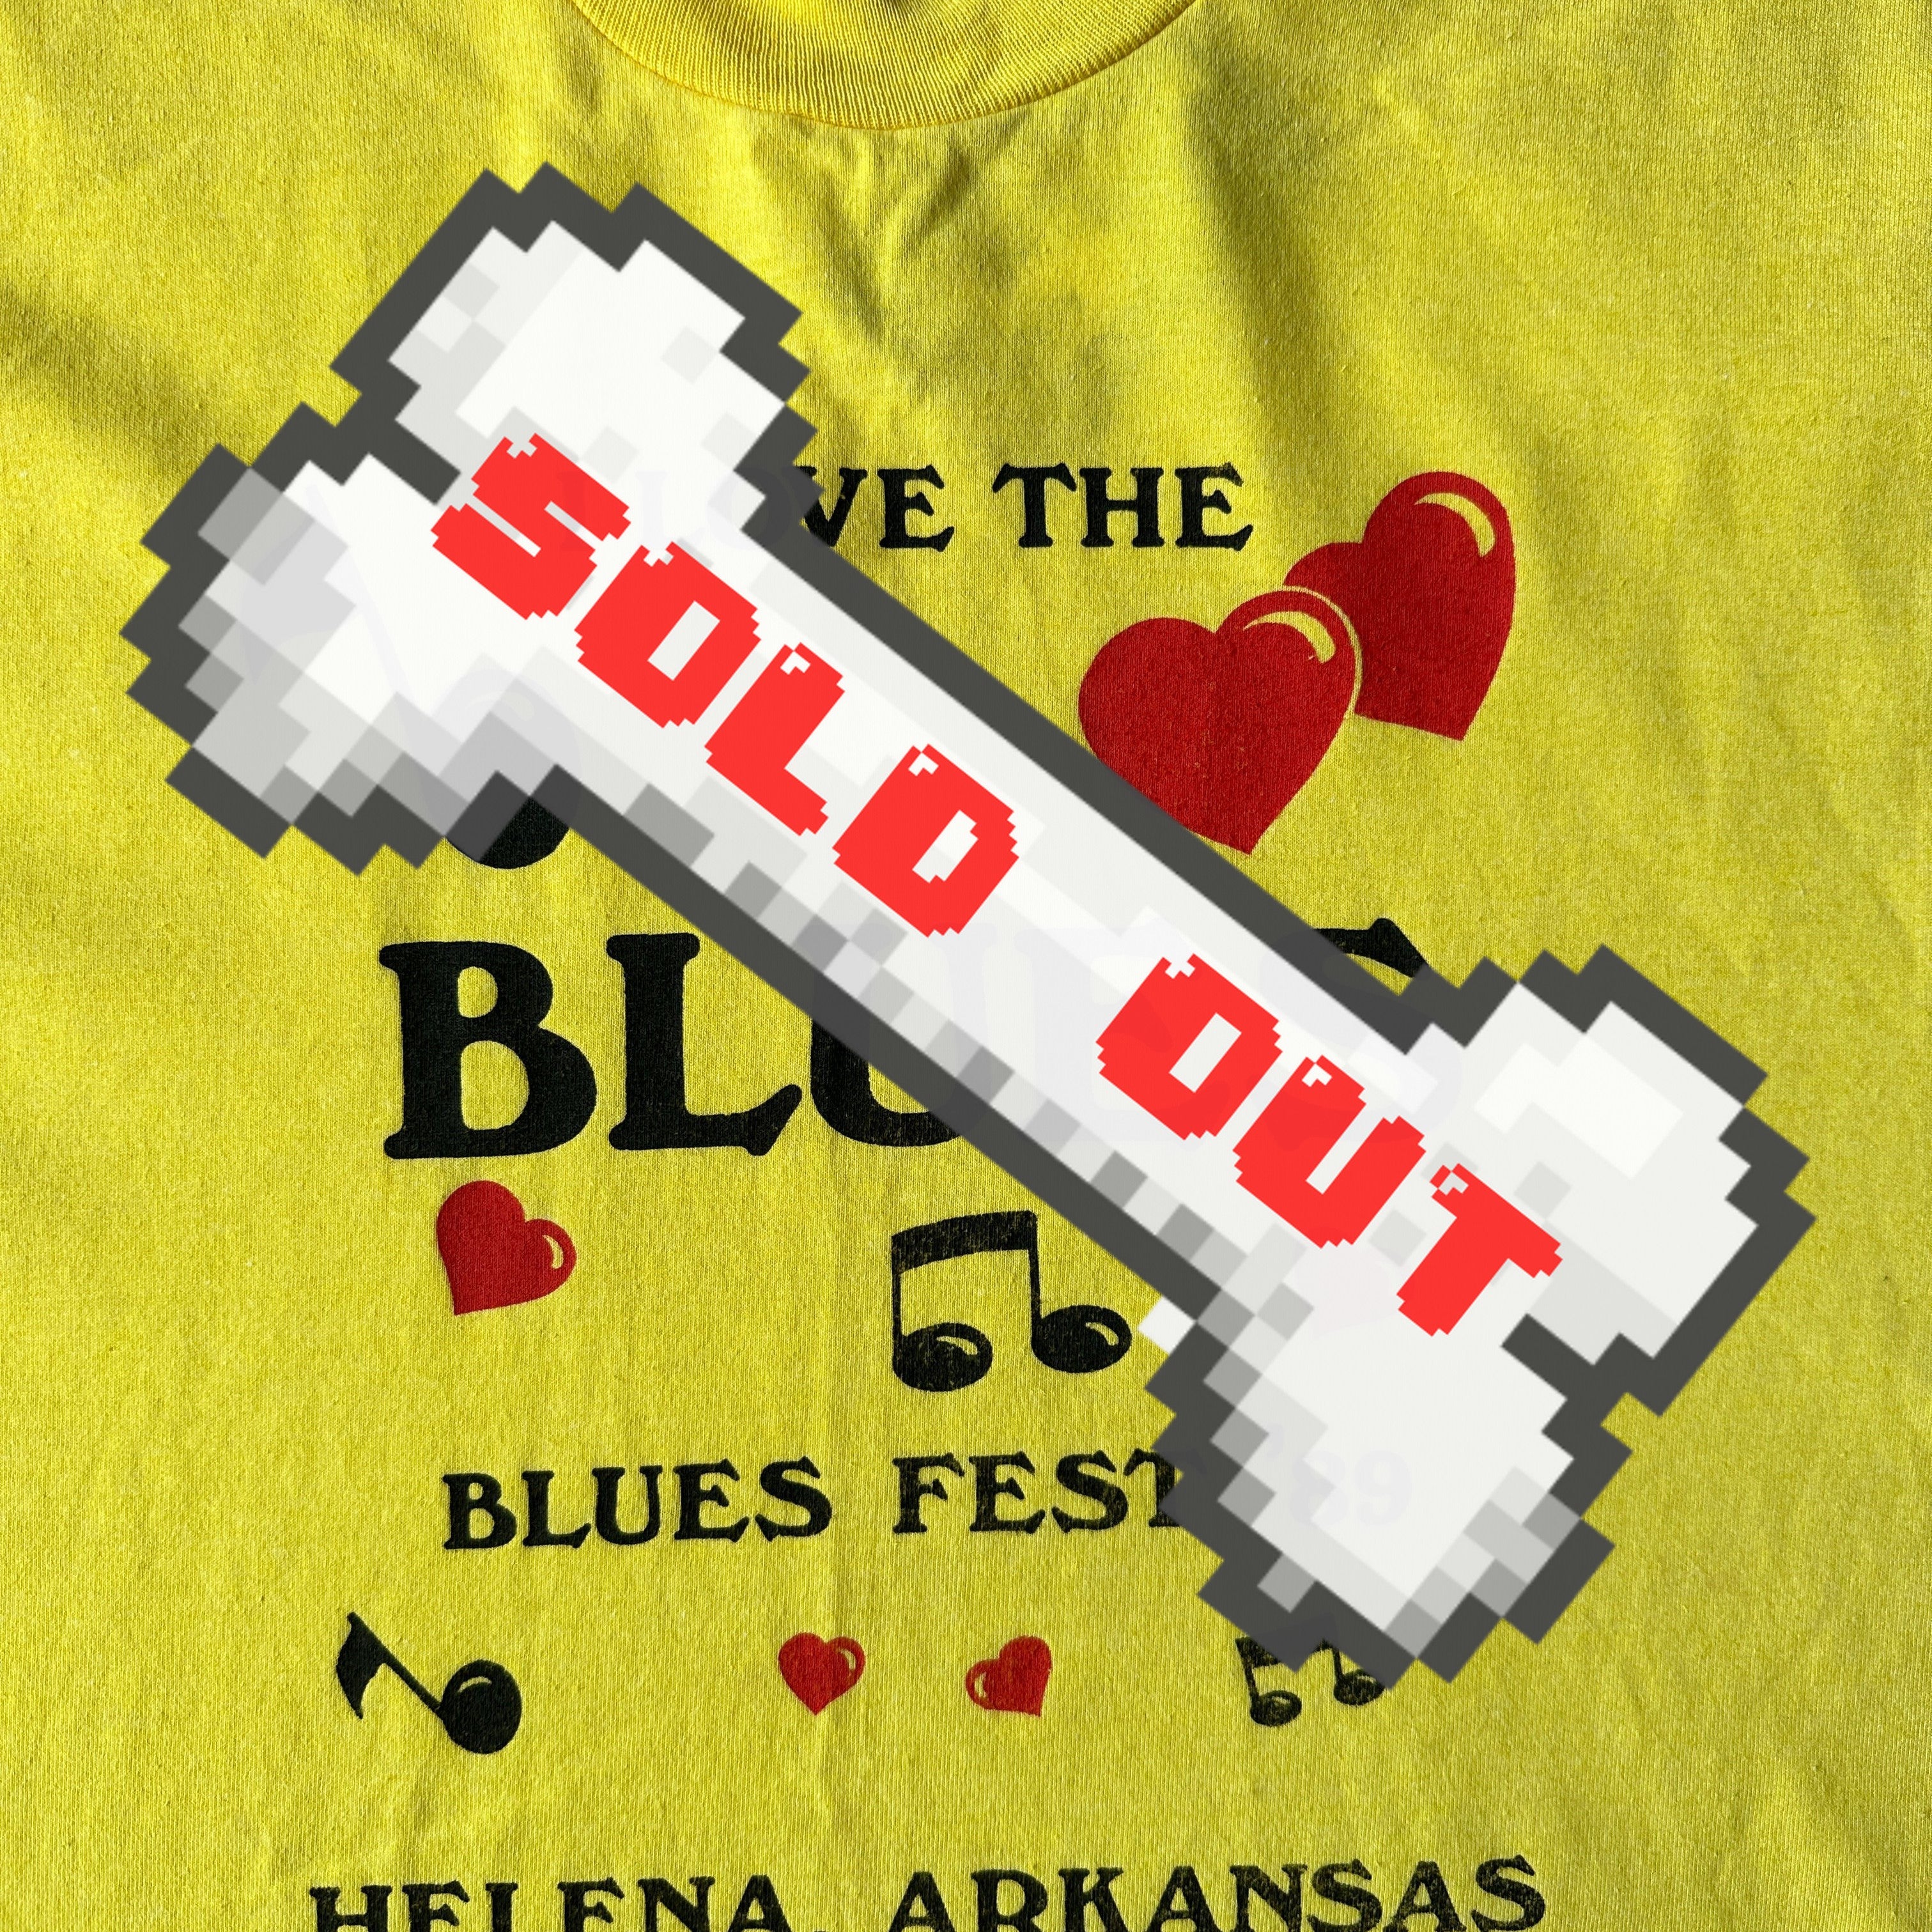 Helena Arkansas I love the blues tee